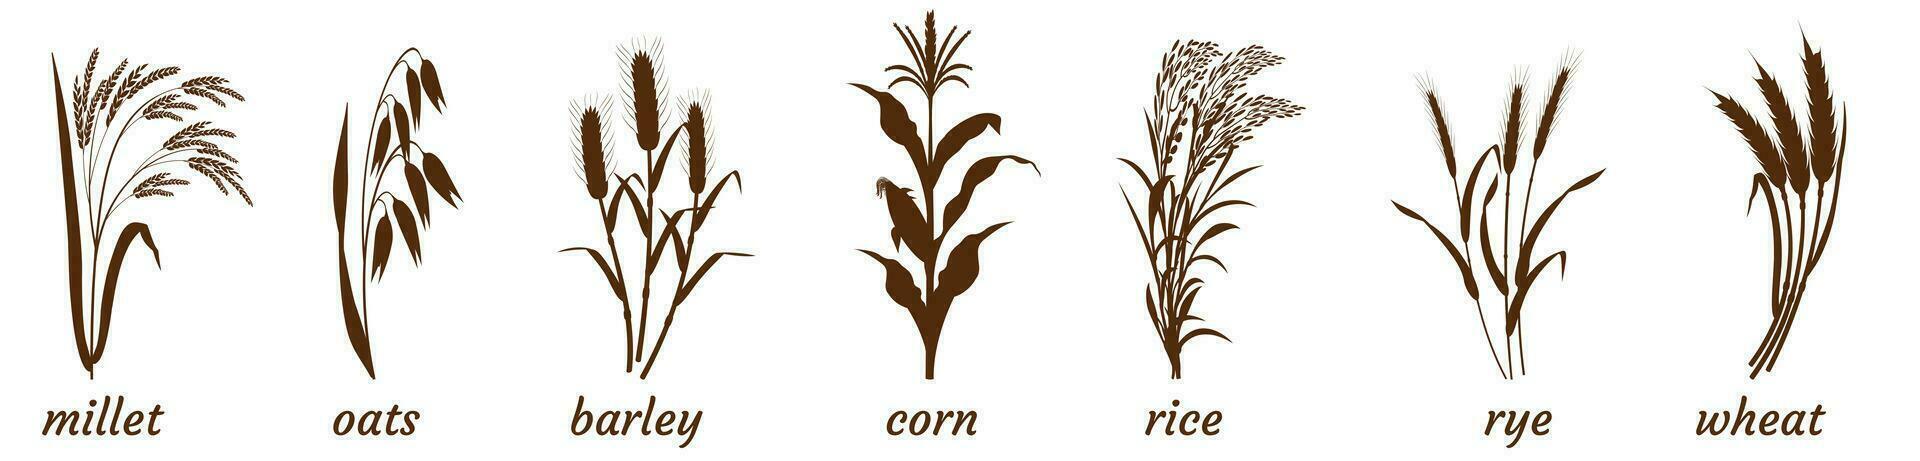 raminhos do cereal plantas em branco. silhueta do grupo do painço, cevada e trigo. aveia e arroz perseguir ícone. elementos para a Projeto do embalagem do cereais vetor